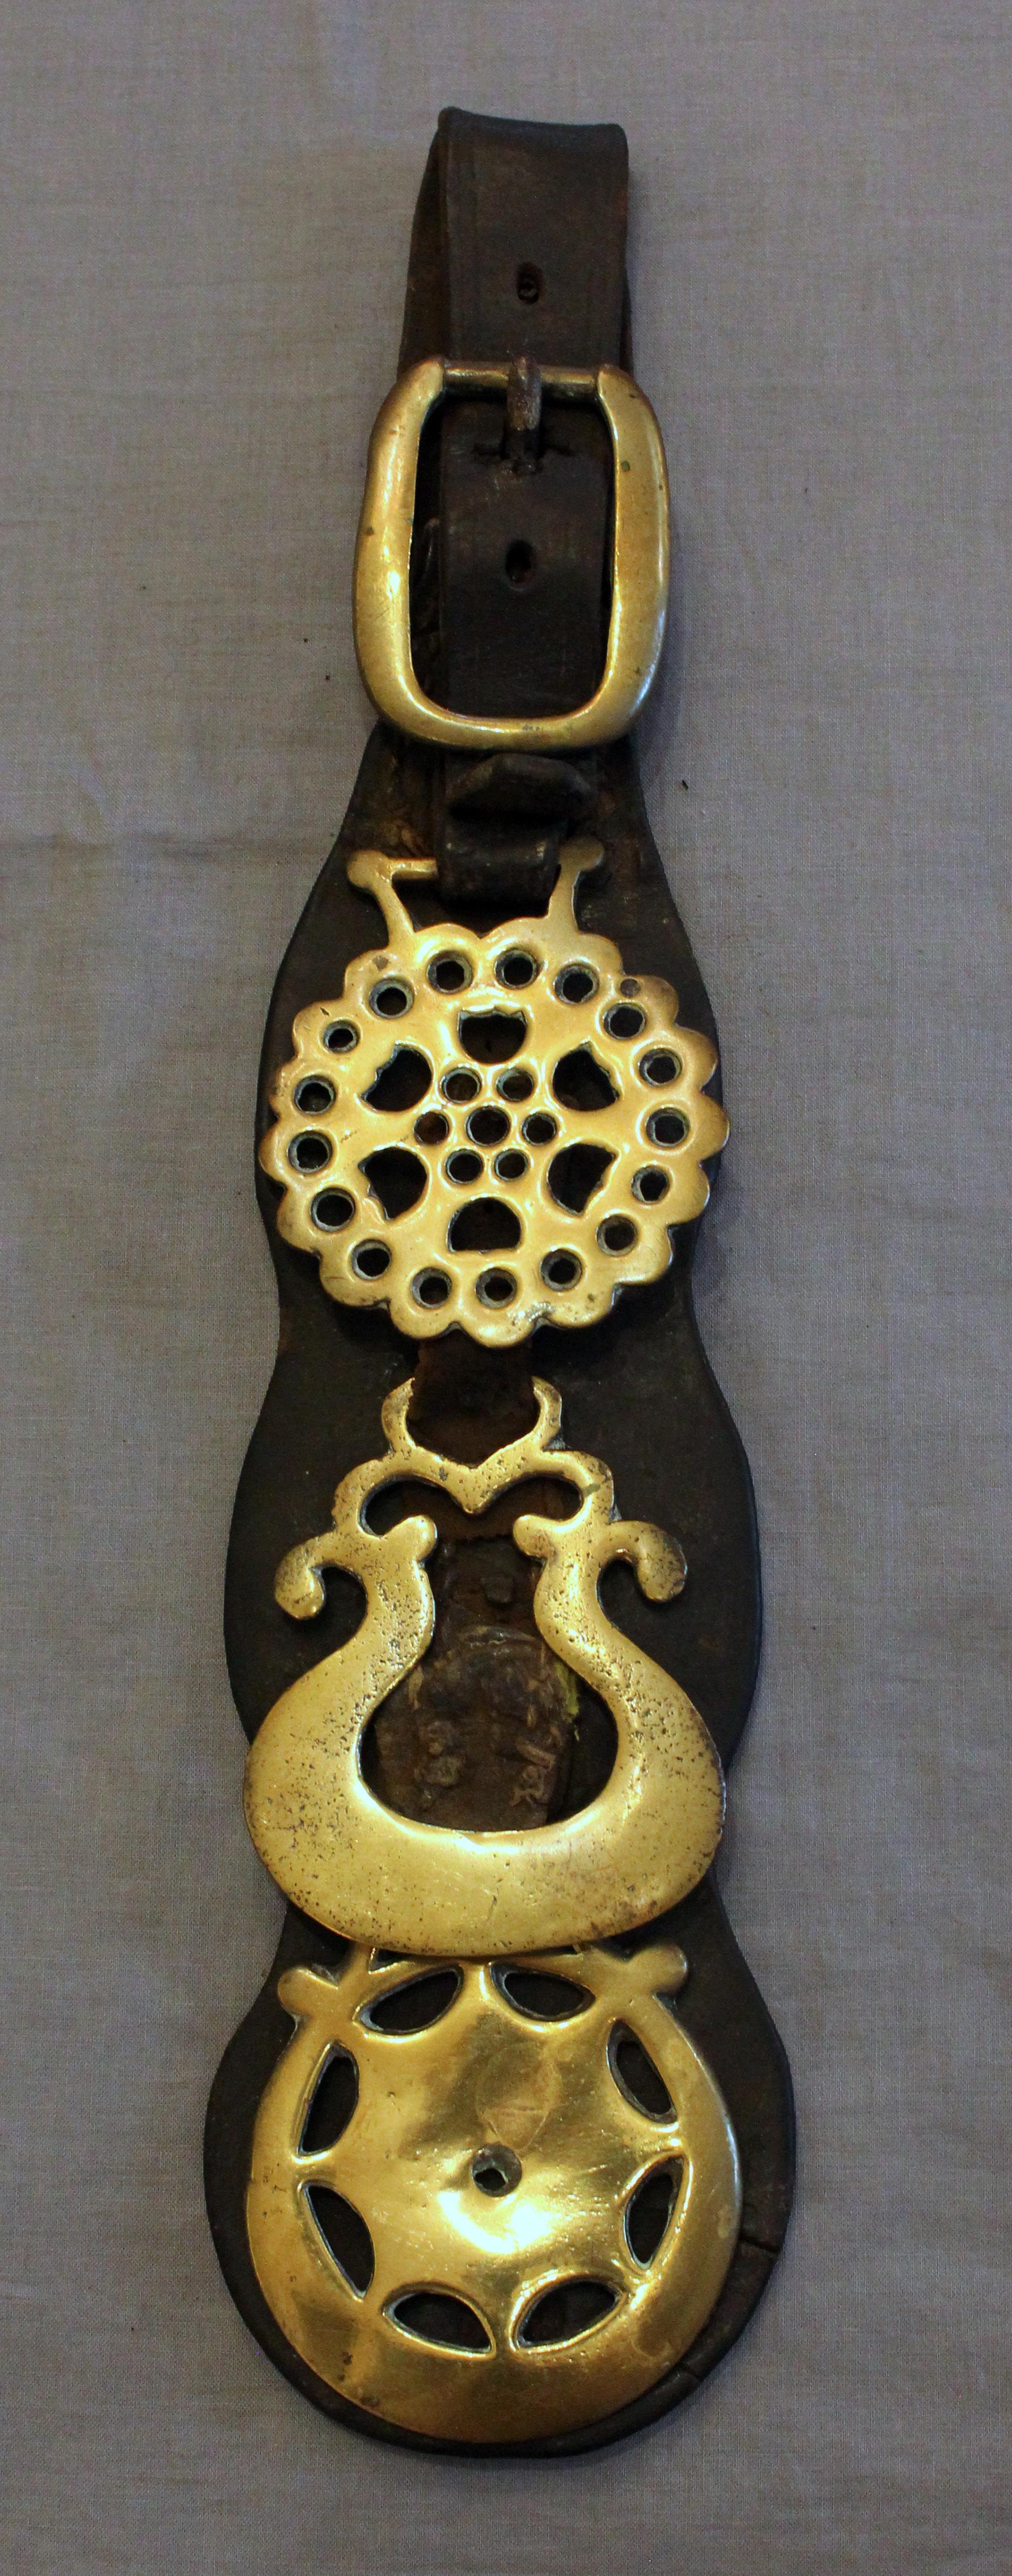 Englischer 3-Messing-Pferdegurt aus Leder, frühes 20. Jahrhundert. Drei dekorative Messingteile unter der Messingschnalle.
15.5